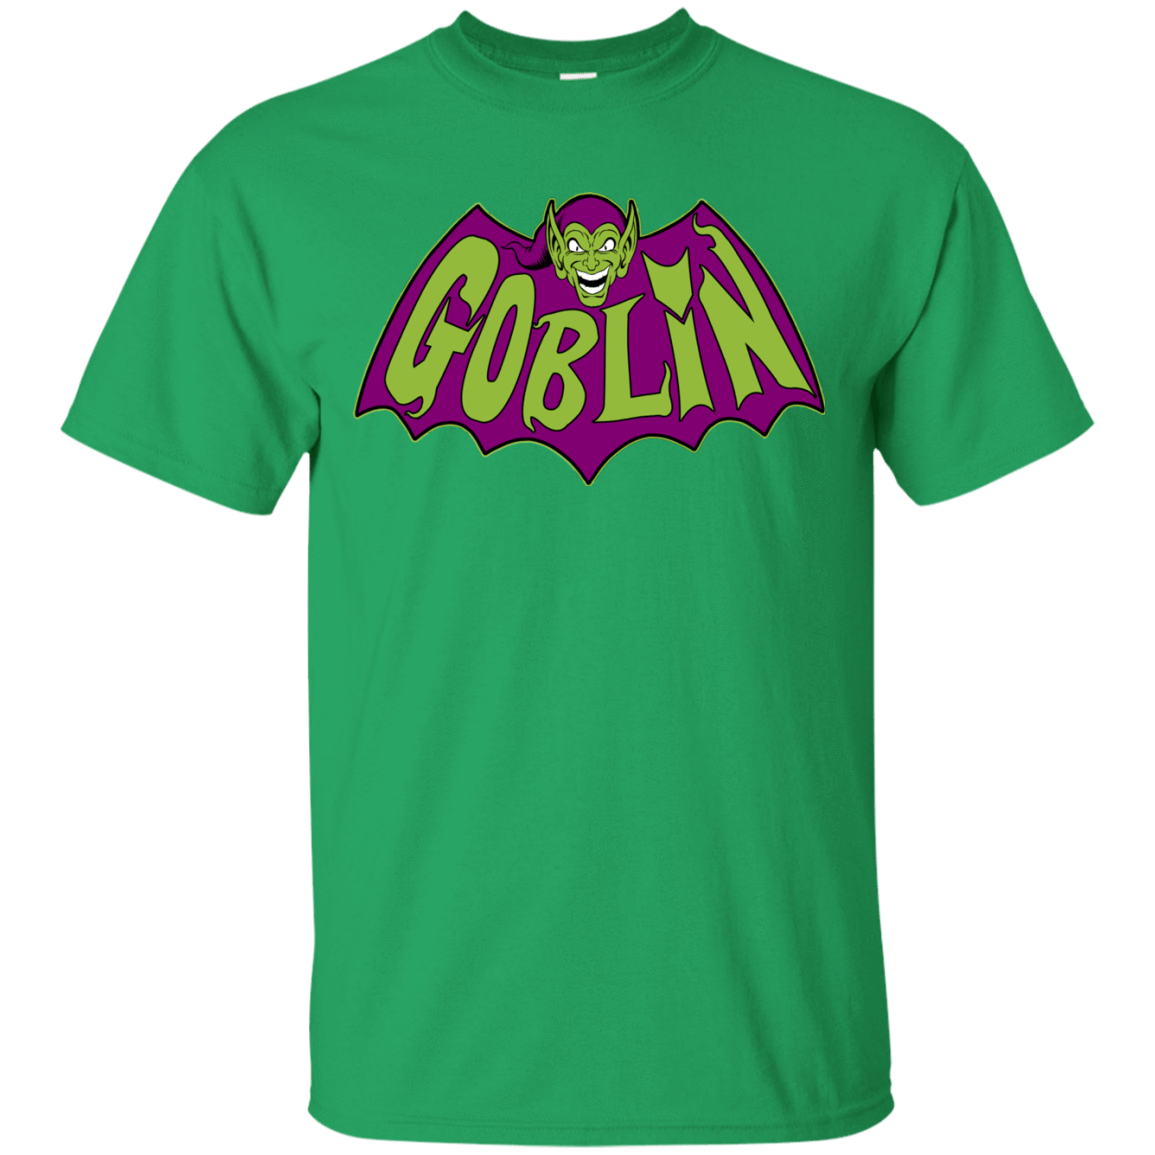 T-Shirts Irish Green / Small Goblin T-Shirt